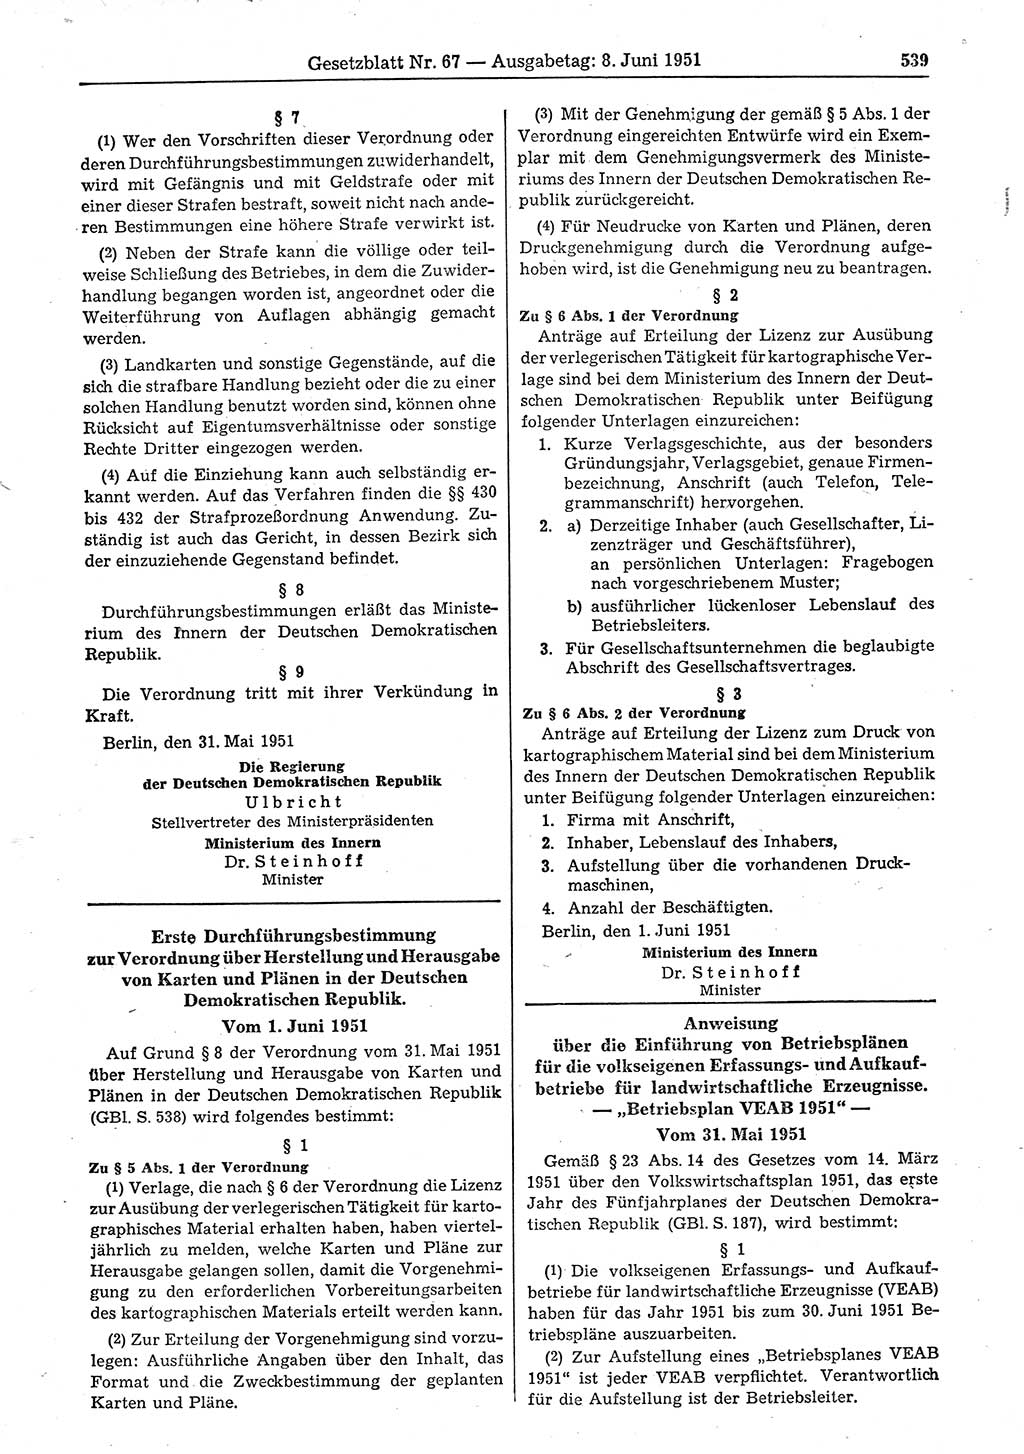 Gesetzblatt (GBl.) der Deutschen Demokratischen Republik (DDR) 1951, Seite 539 (GBl. DDR 1951, S. 539)